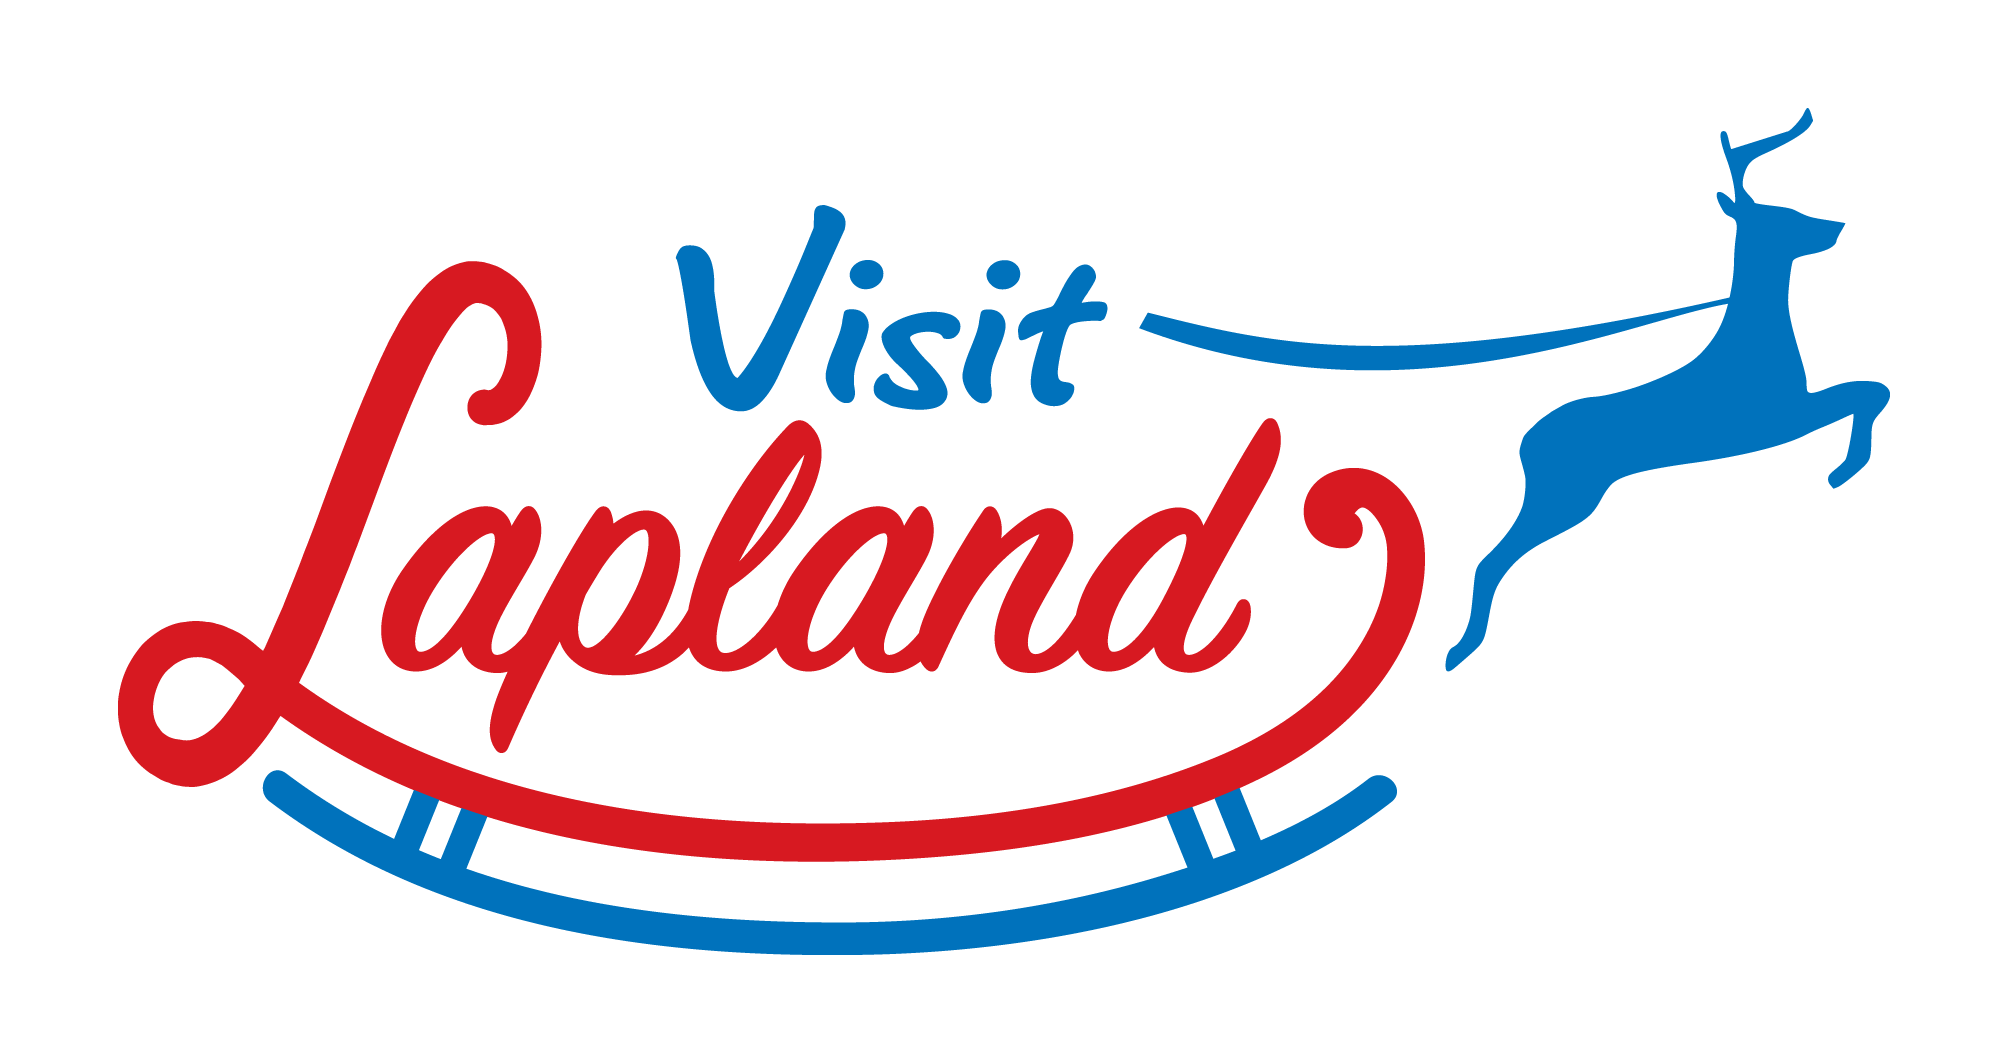 visit lapland